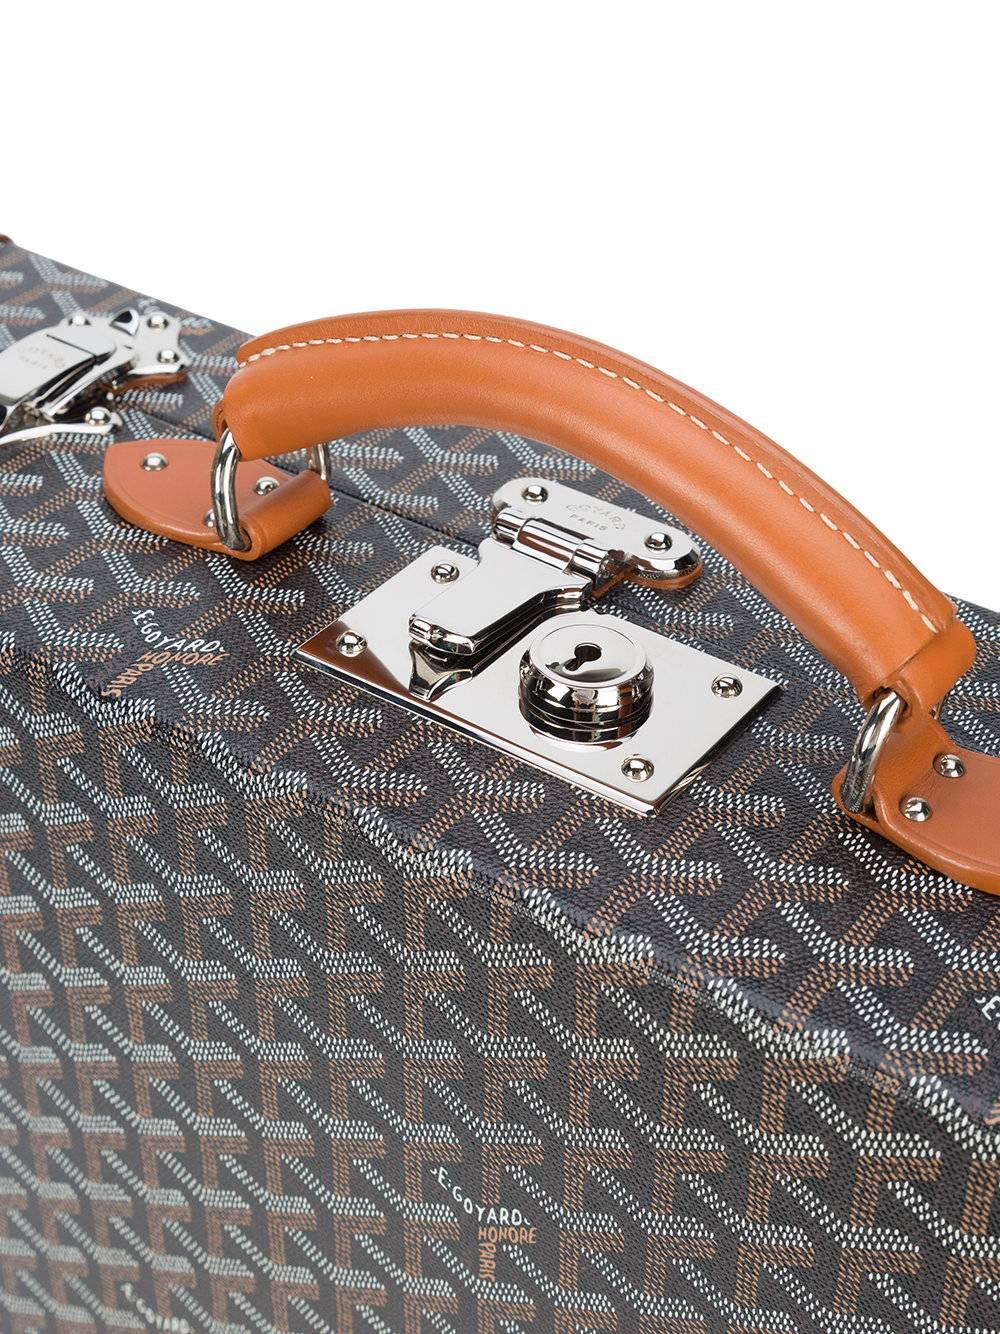 goyard mens briefcase